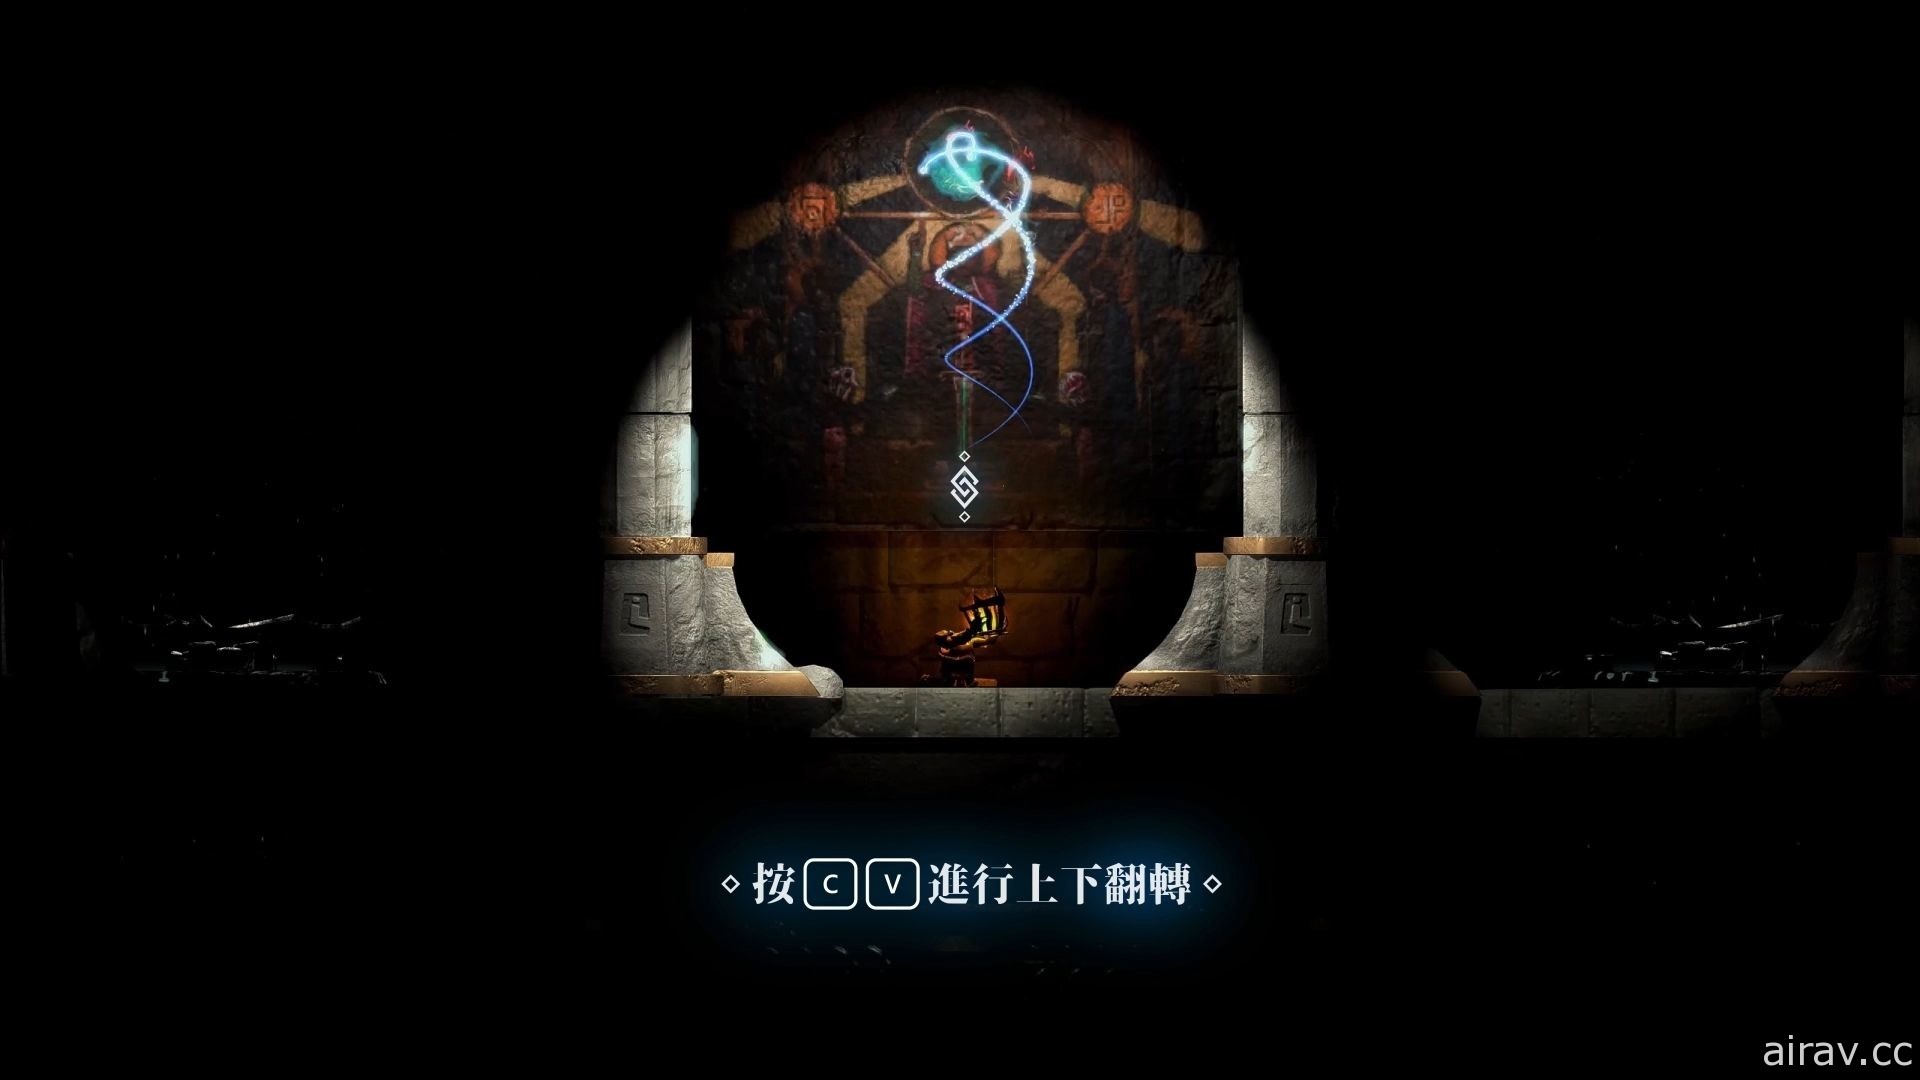 中國科大「RESET-STUDIO」製作冒險遊戲《永恆之火》以視覺錯視通過障礙與陷阱